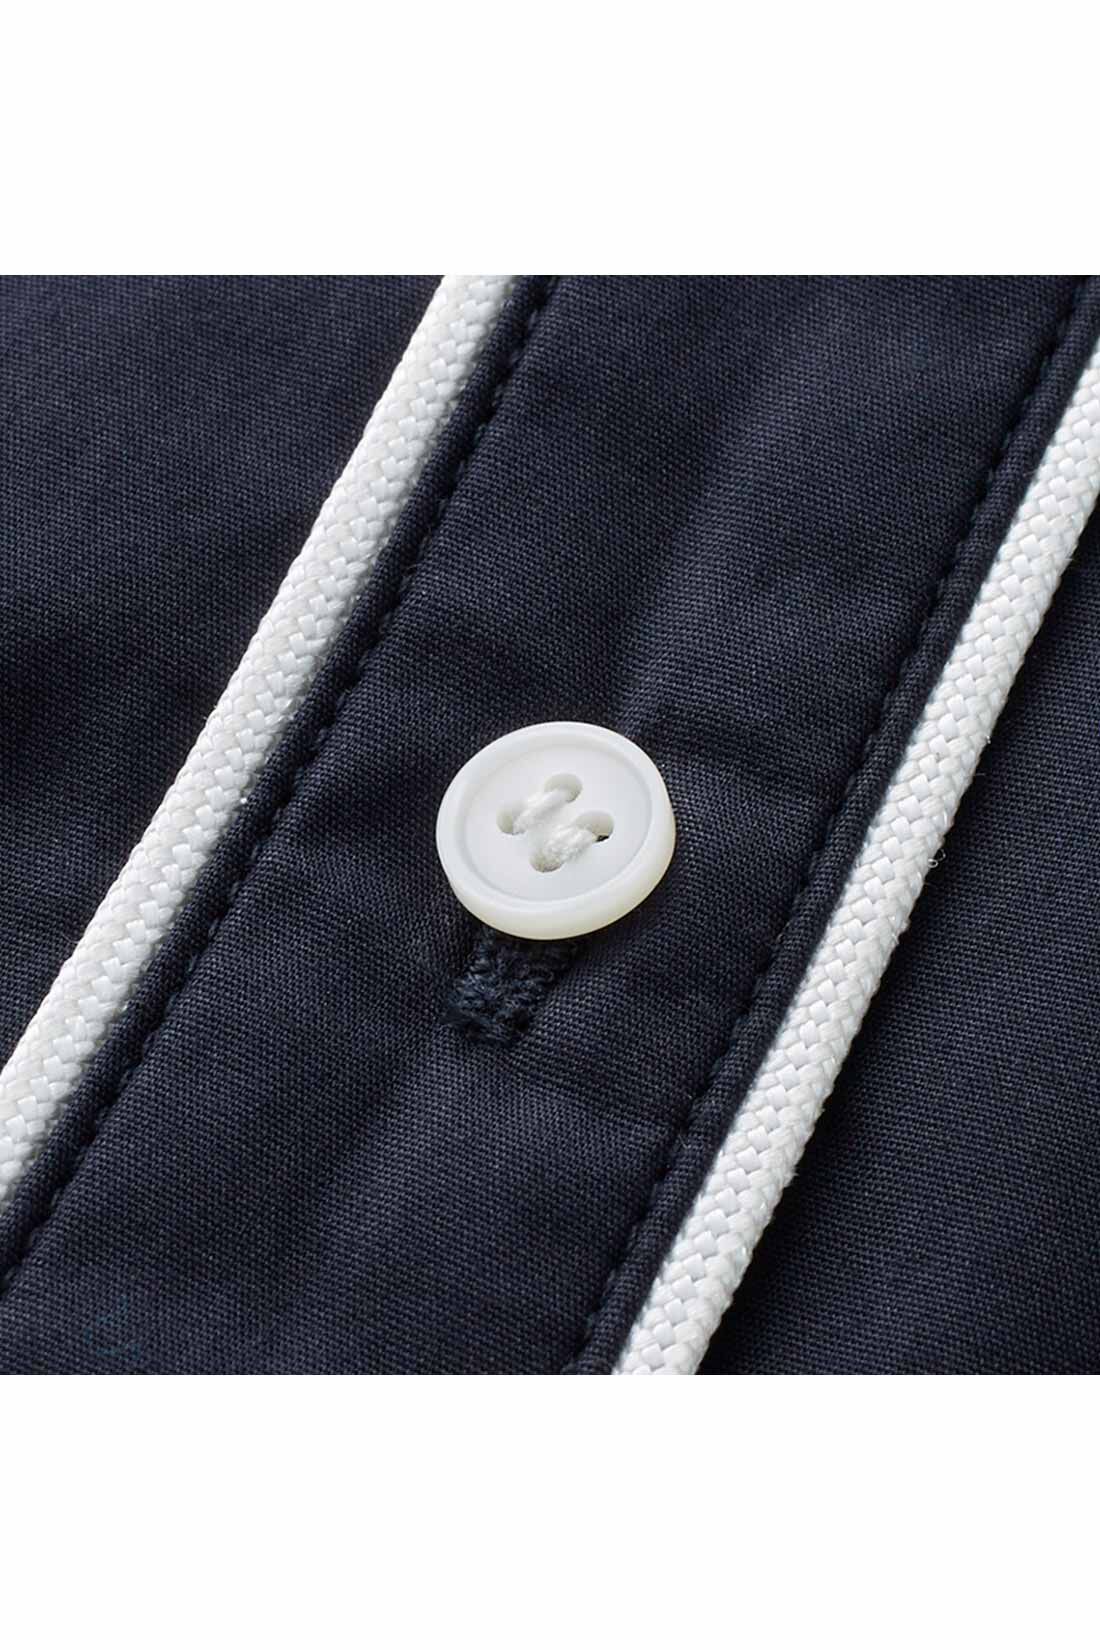 IEDIT[イディット]　コーデのポイントになる きれいめパイピングシャツ〈ネイビー〉|白いパイピングテープとボタンが、清潔感＆華やかなアクセントに。